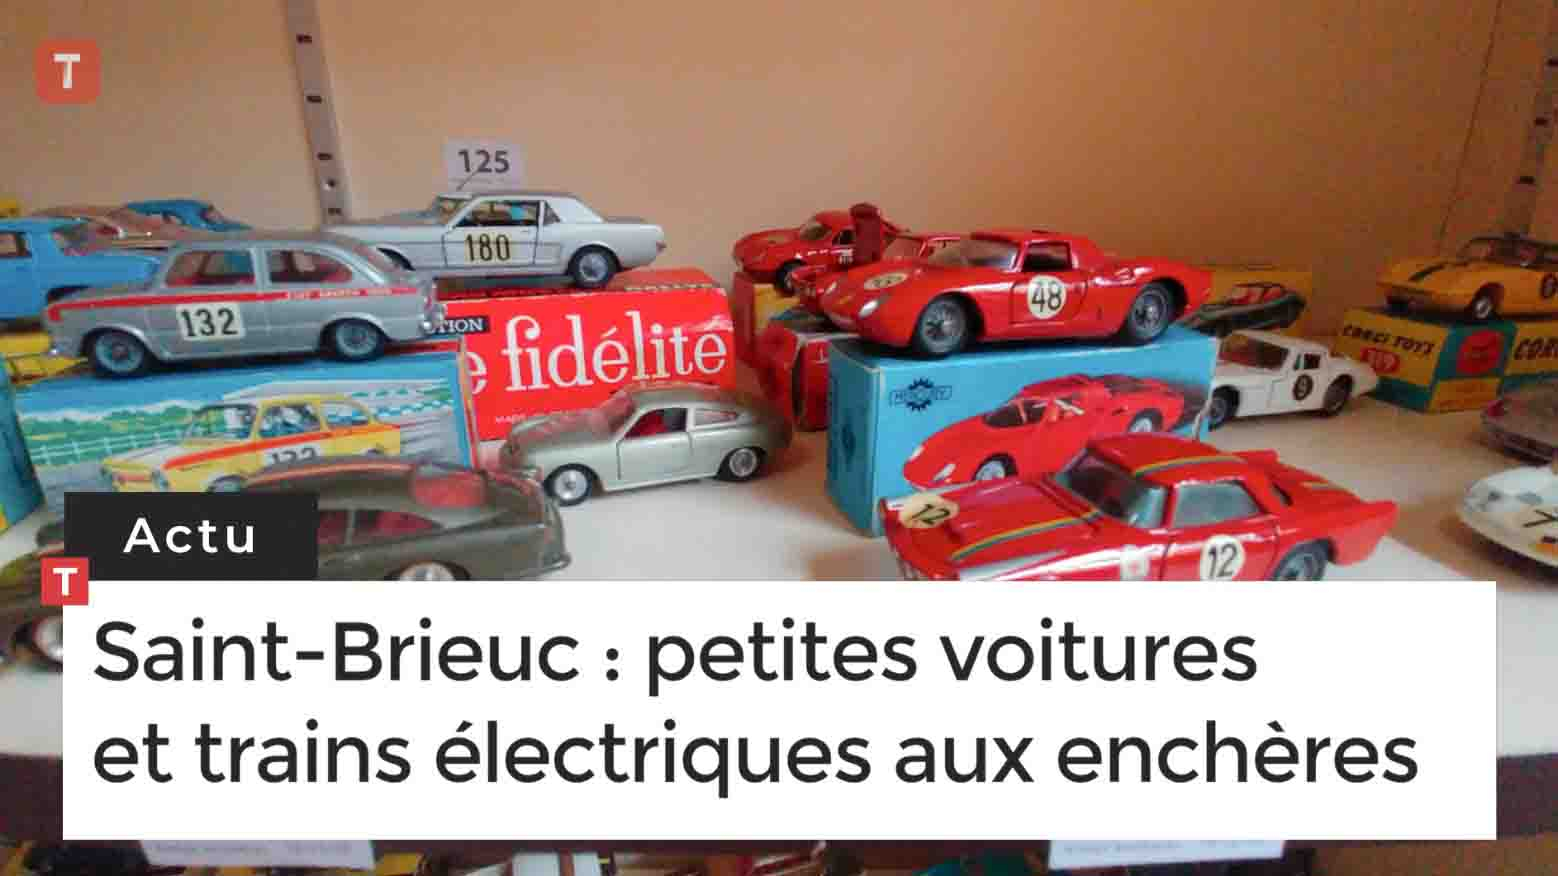 Saint-Brieuc. Petites voitures et trains électriques aux enchères (Le Télégramme)